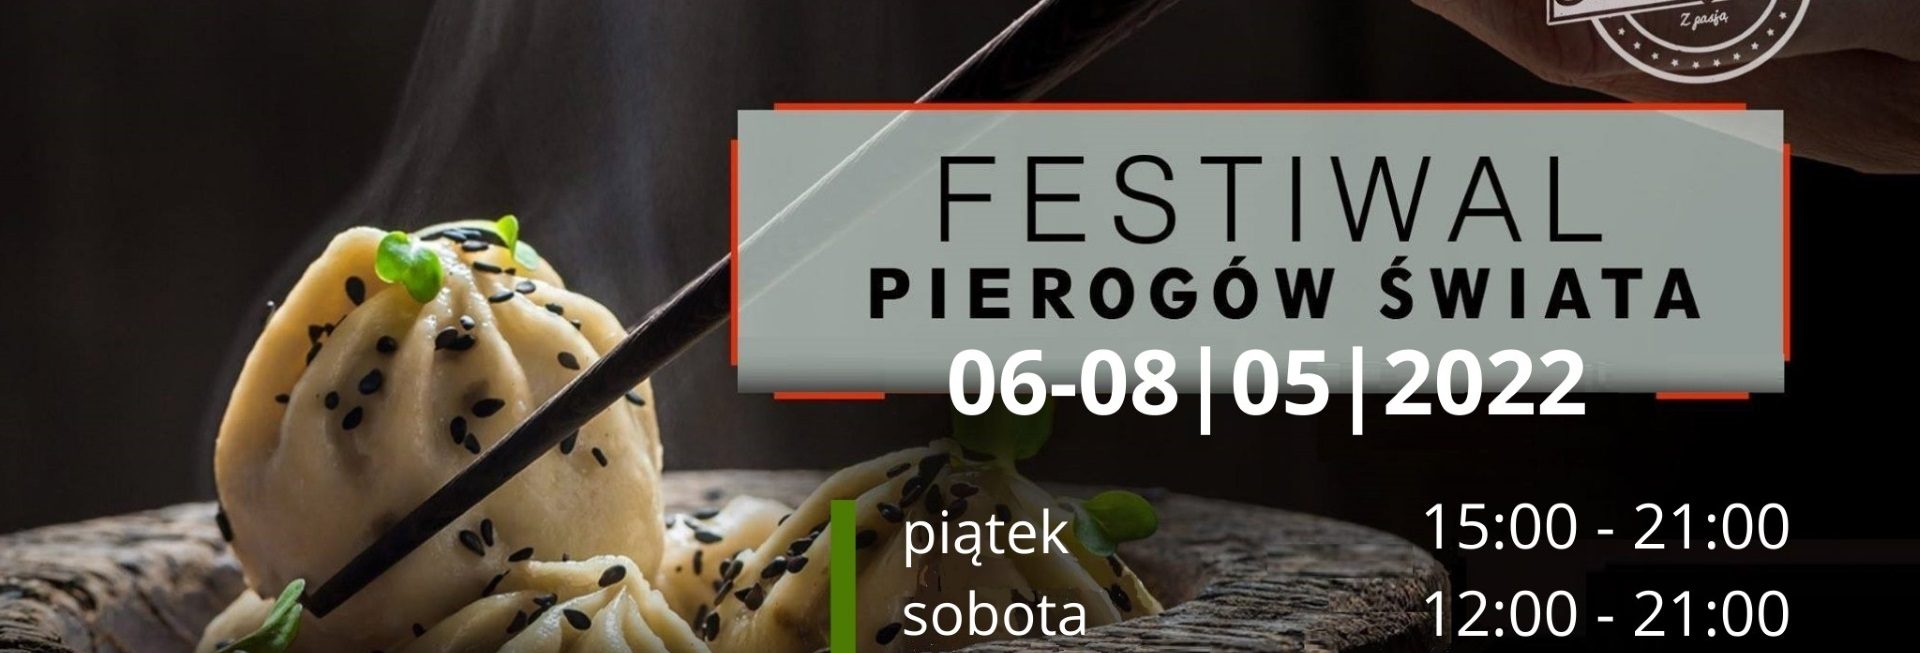 Plakat graficzny zapraszający do Elbląga na Festiwal Pierogów Świata Elbląg 2022.